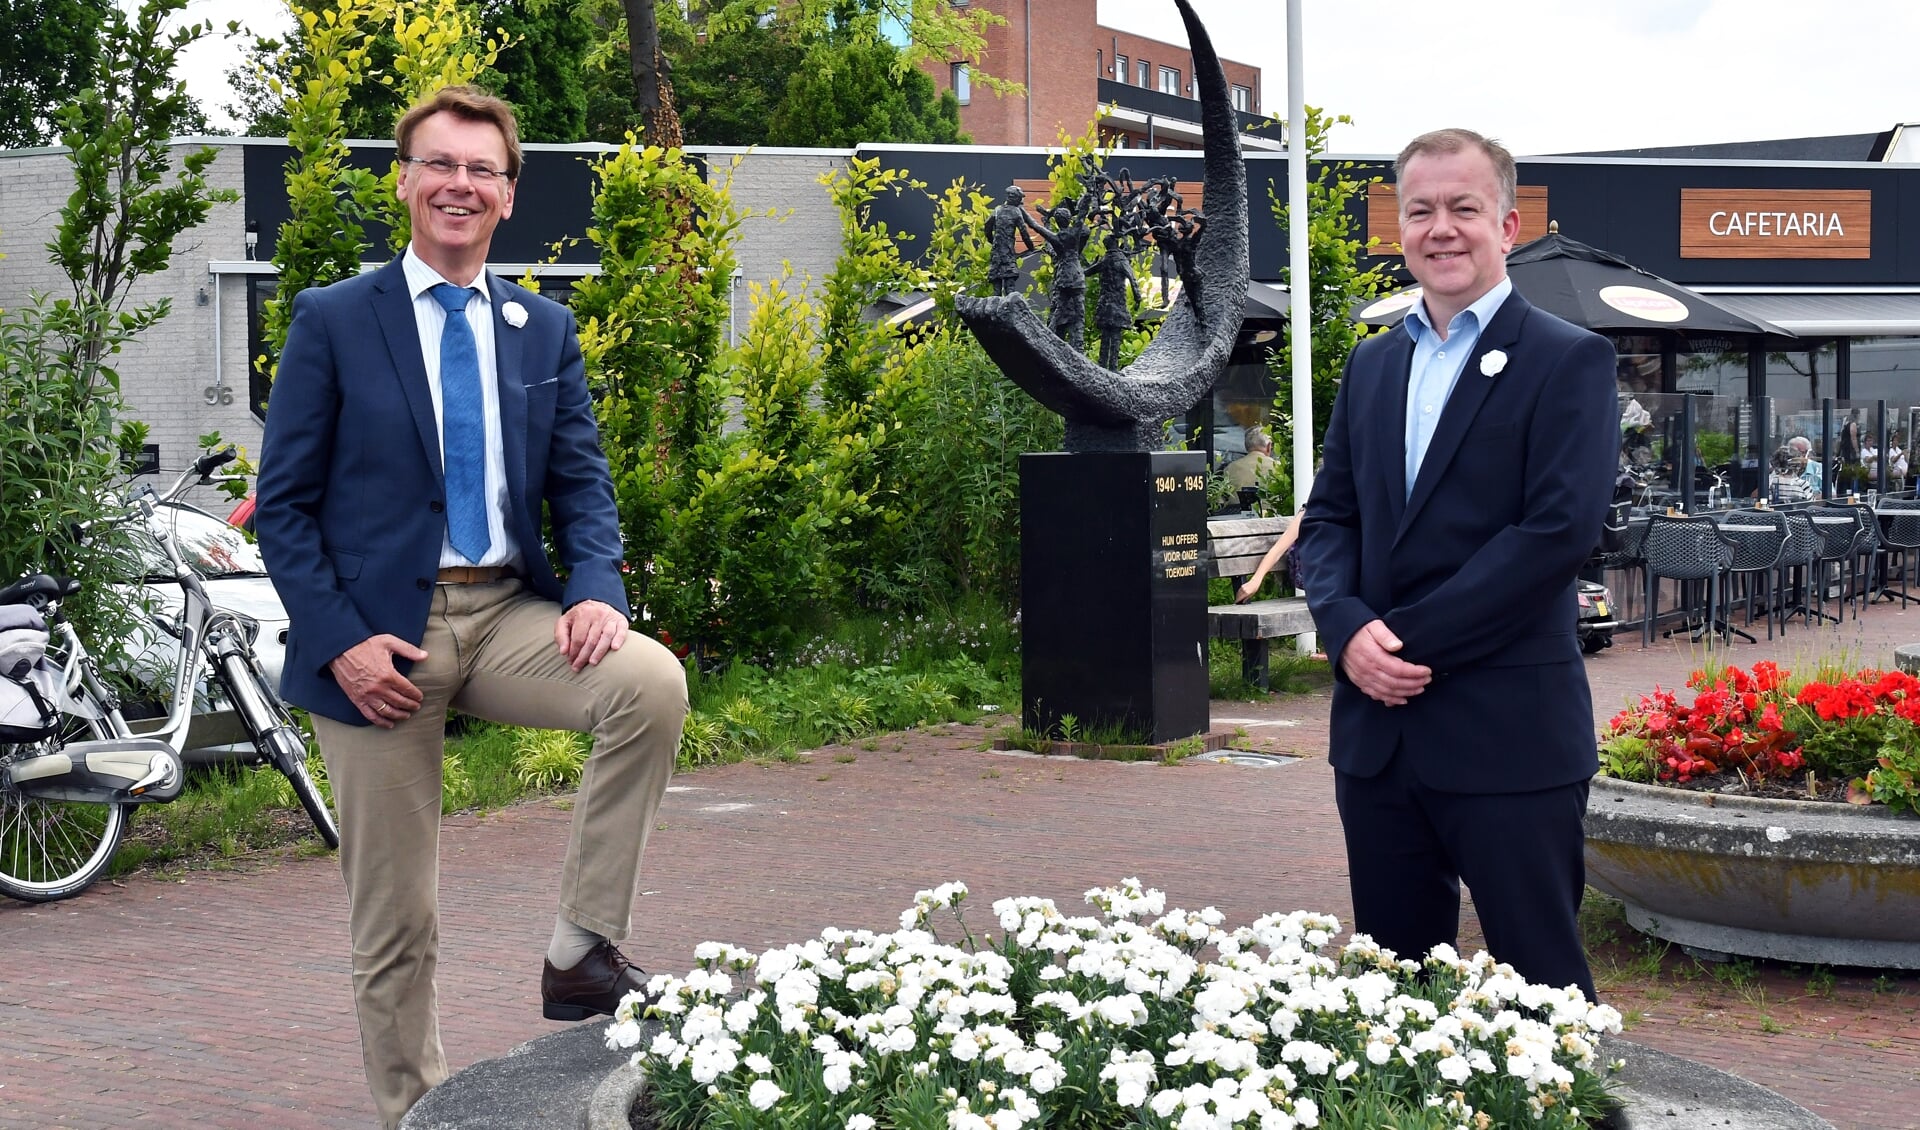 Burgemeester Wortelboer en Richard Huisman, voorzitter van de Veteranencomité Stede Broec, nemen een kijkje bij de nieuwe plantenbak. 